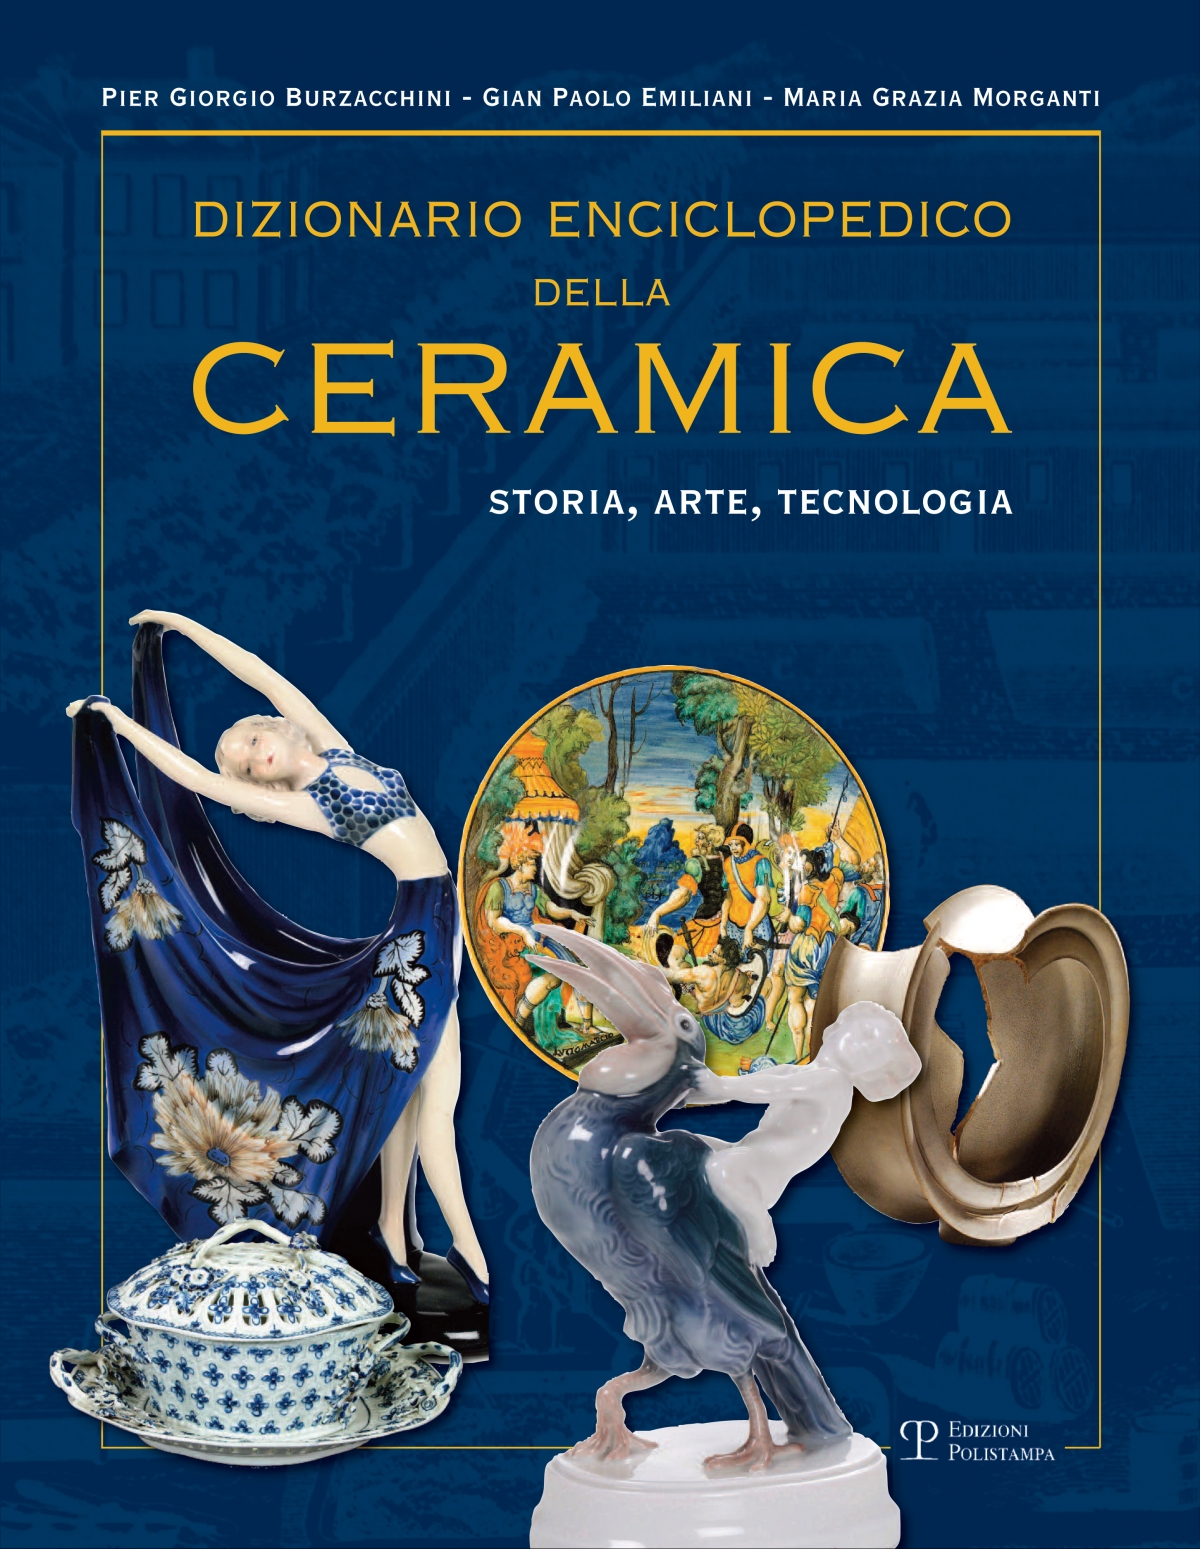 Dizionario enciclopedico della ceramica (tomo III)